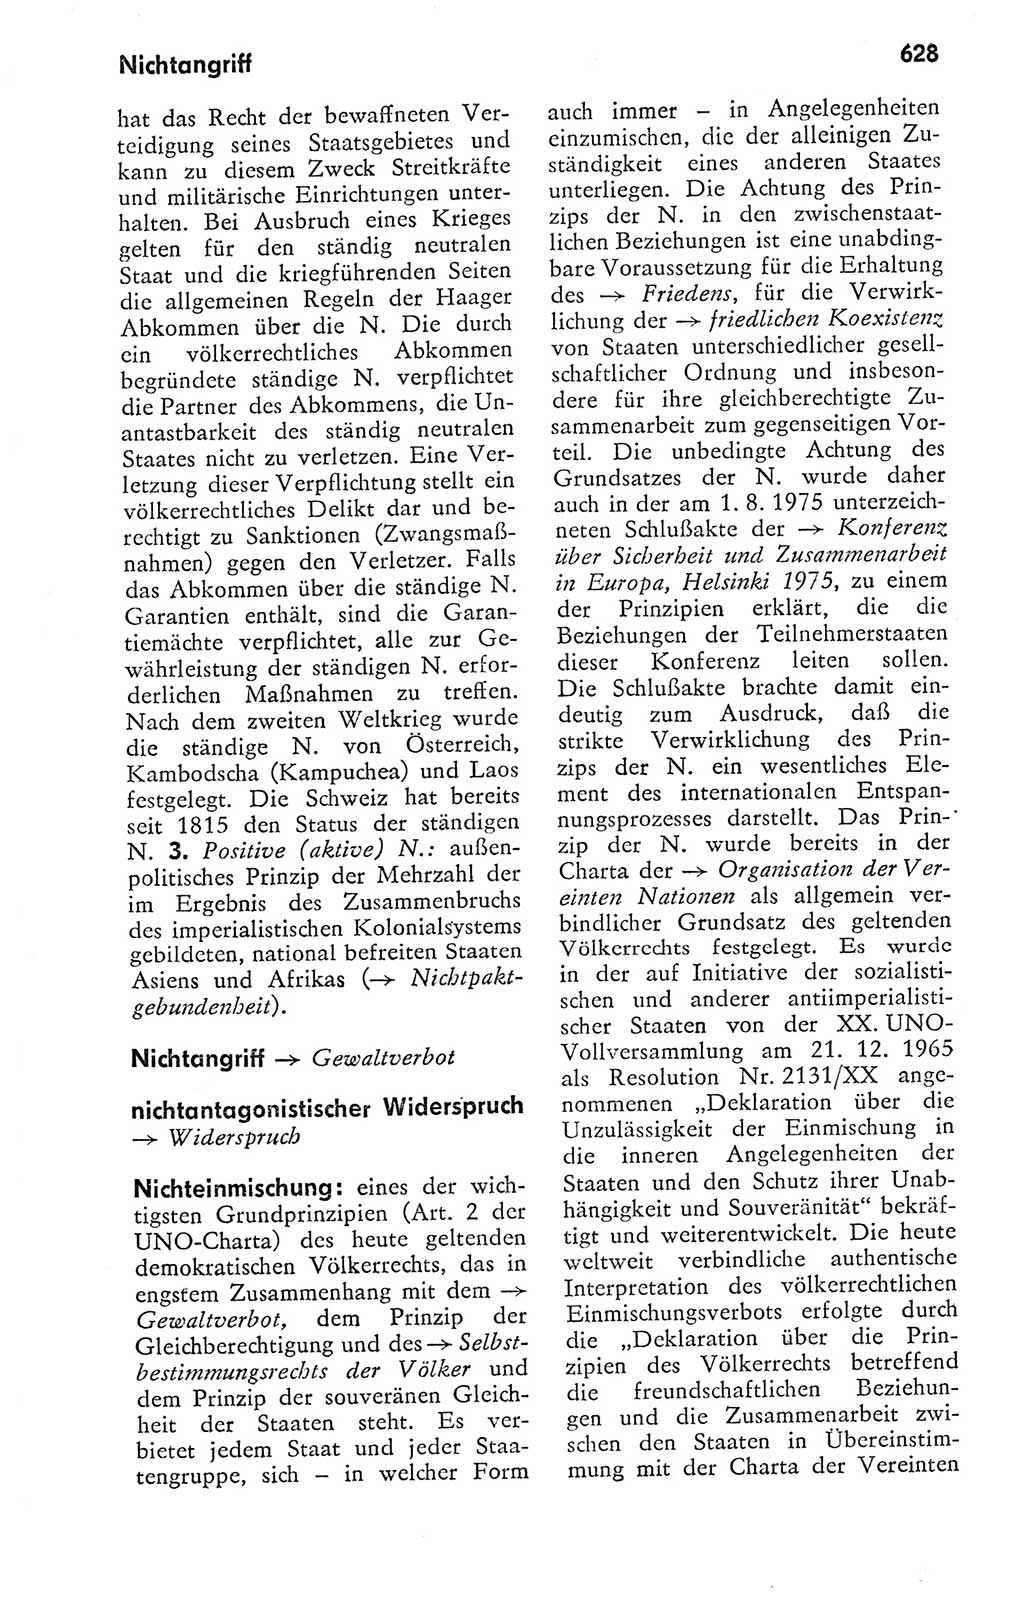 Kleines politisches Wörterbuch [Deutsche Demokratische Republik (DDR)] 1978, Seite 628 (Kl. pol. Wb. DDR 1978, S. 628)